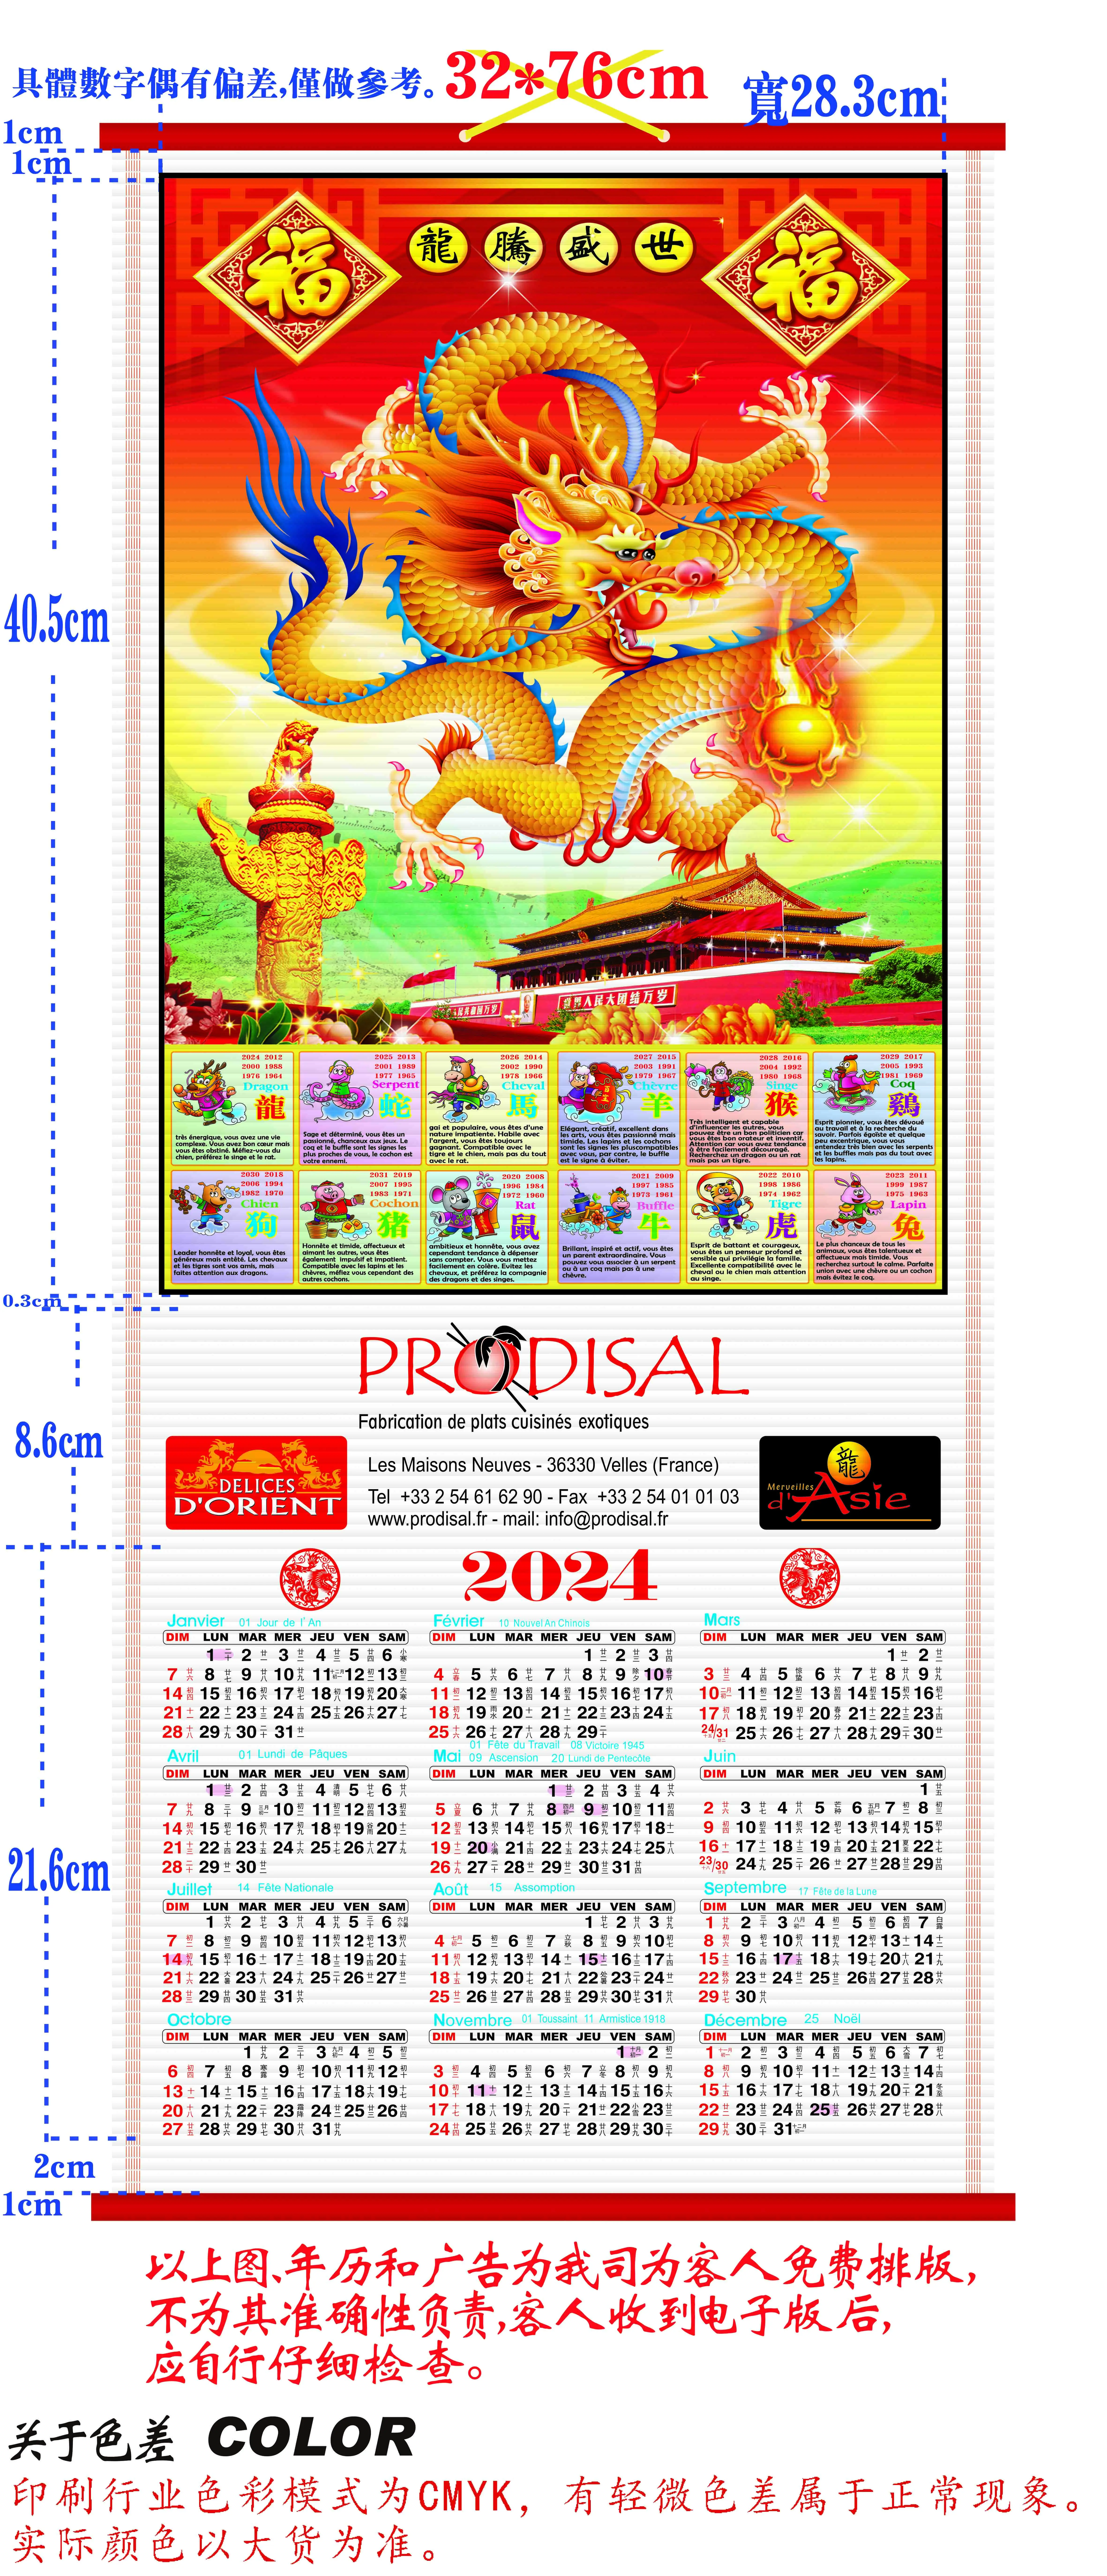 Página 9  Fotos Wall Chinese Calendario, 26.000+ fotos de arquivo grátis  de alta qualidade